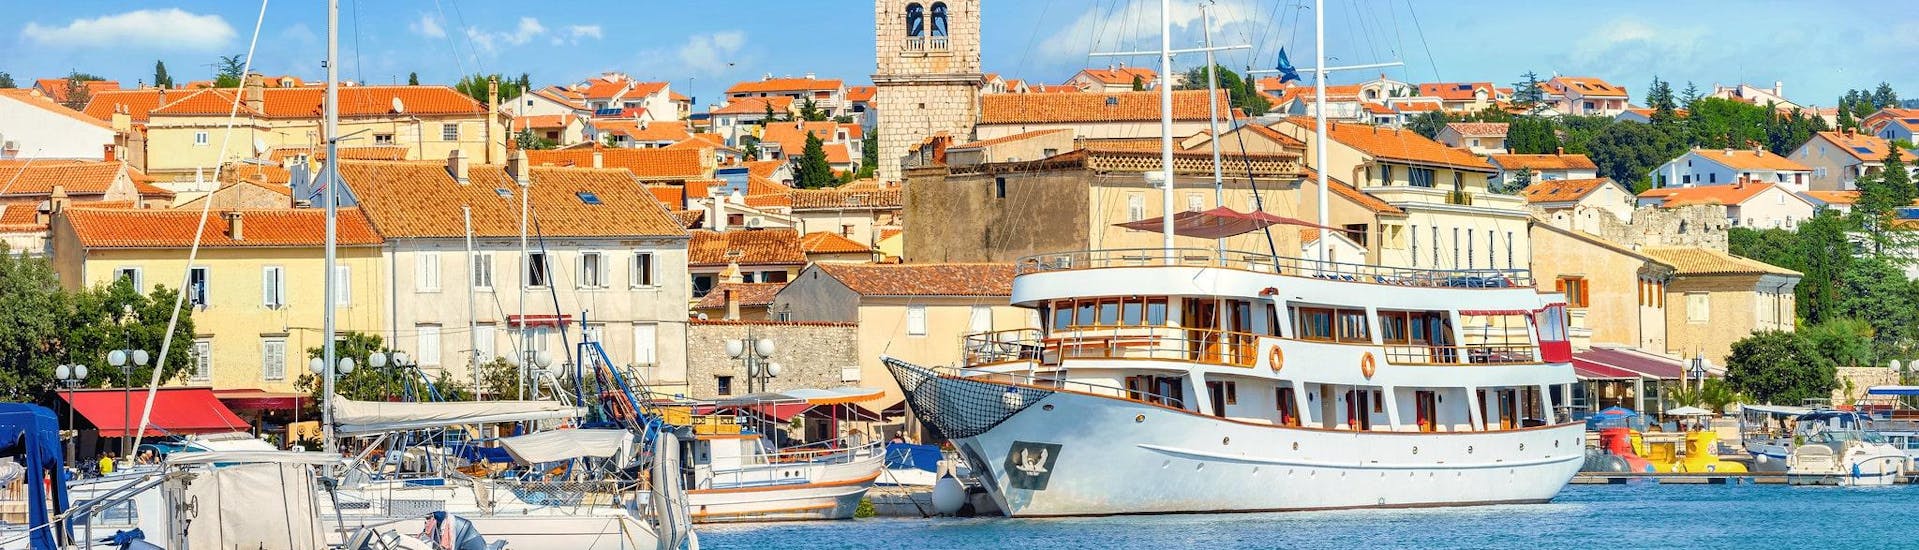 Blick auf den Hafen der Stadt Krk, der ein beliebter Ausgangspunkt für viele Bootstouren rund um die Insel Krk ist.